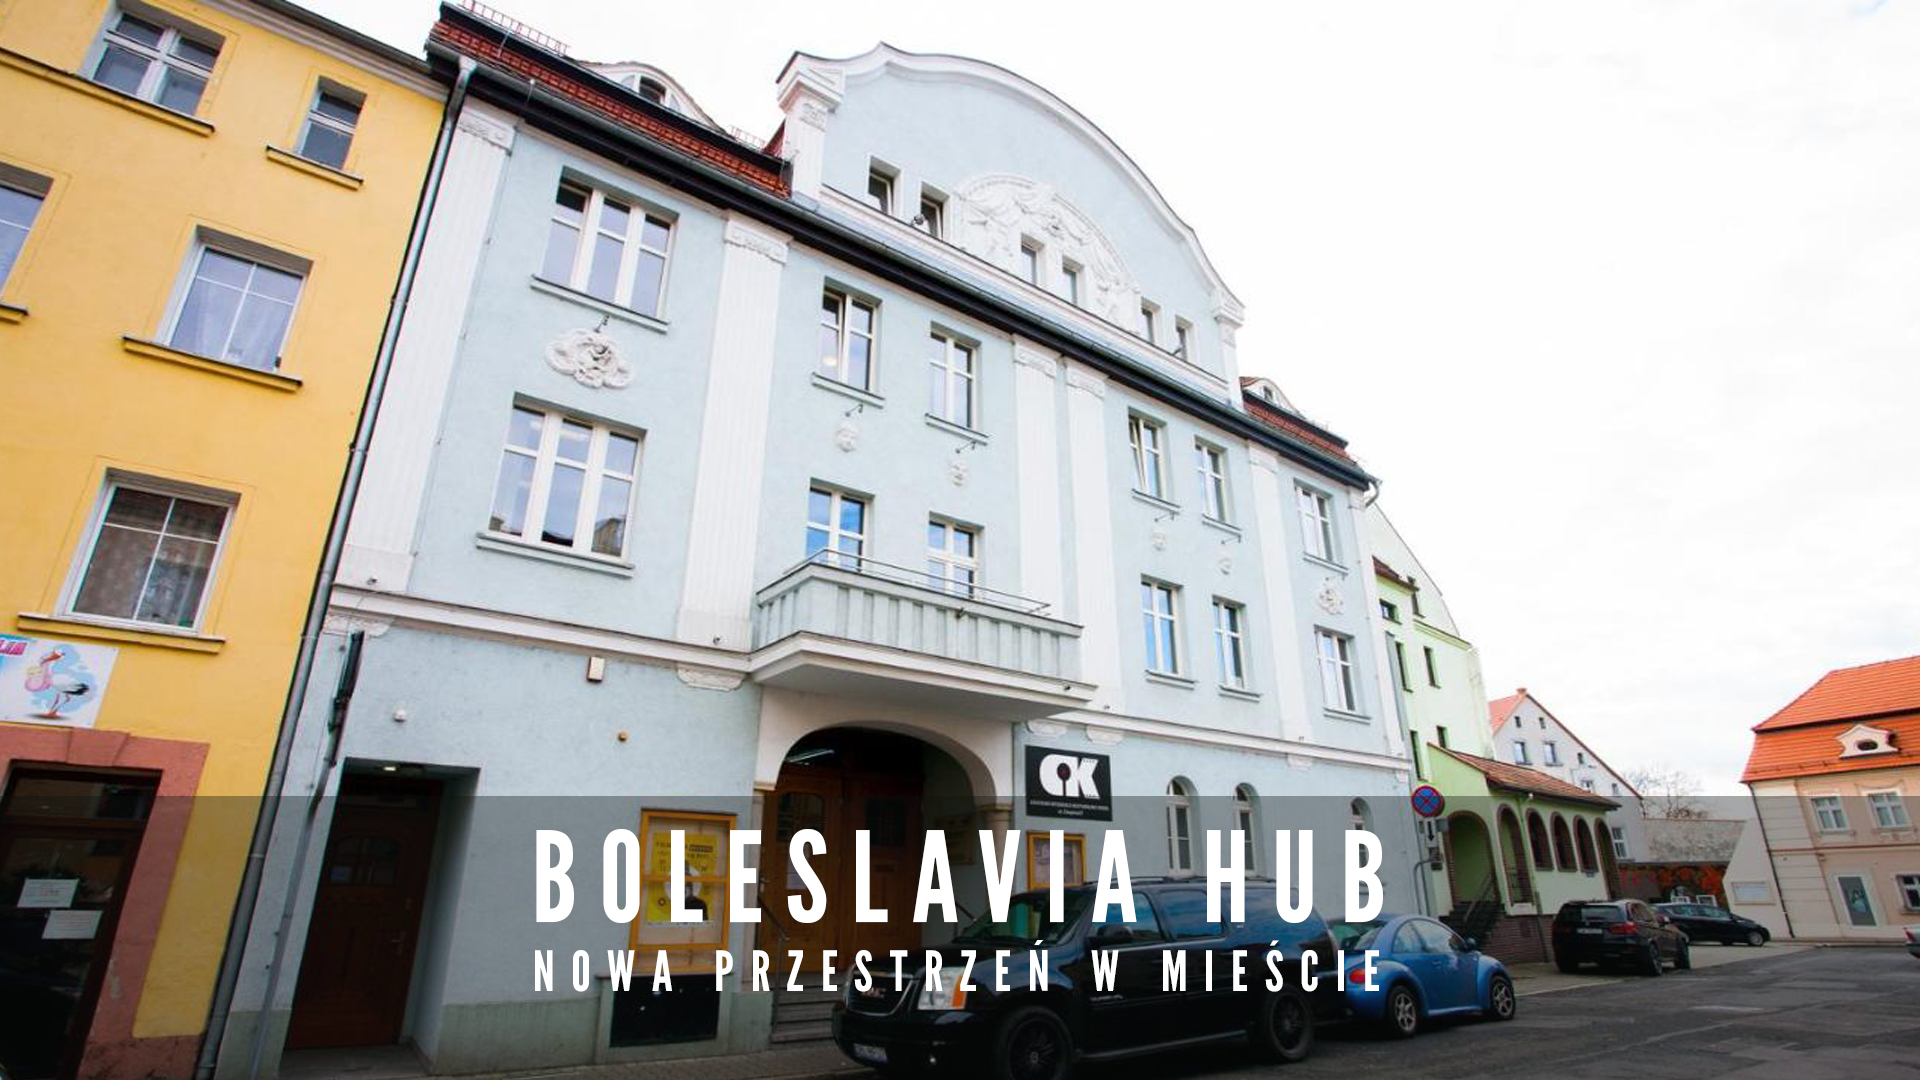 Boleslavia HUB nowa przestrzeń w mieście.